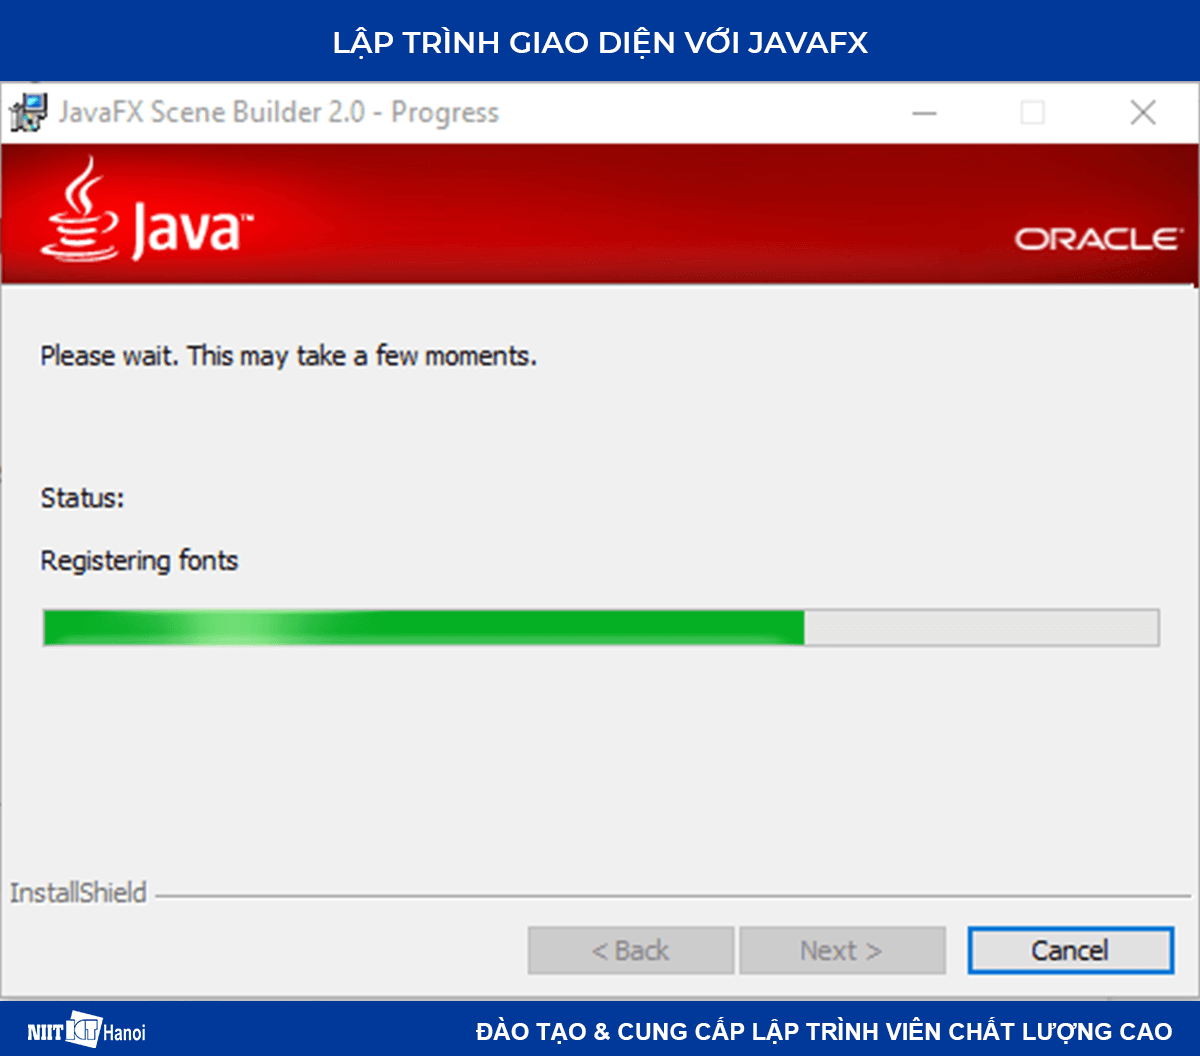 Lập trình giao diện với JavaFX: Cài đặt JavaFX Scence Builder - 3